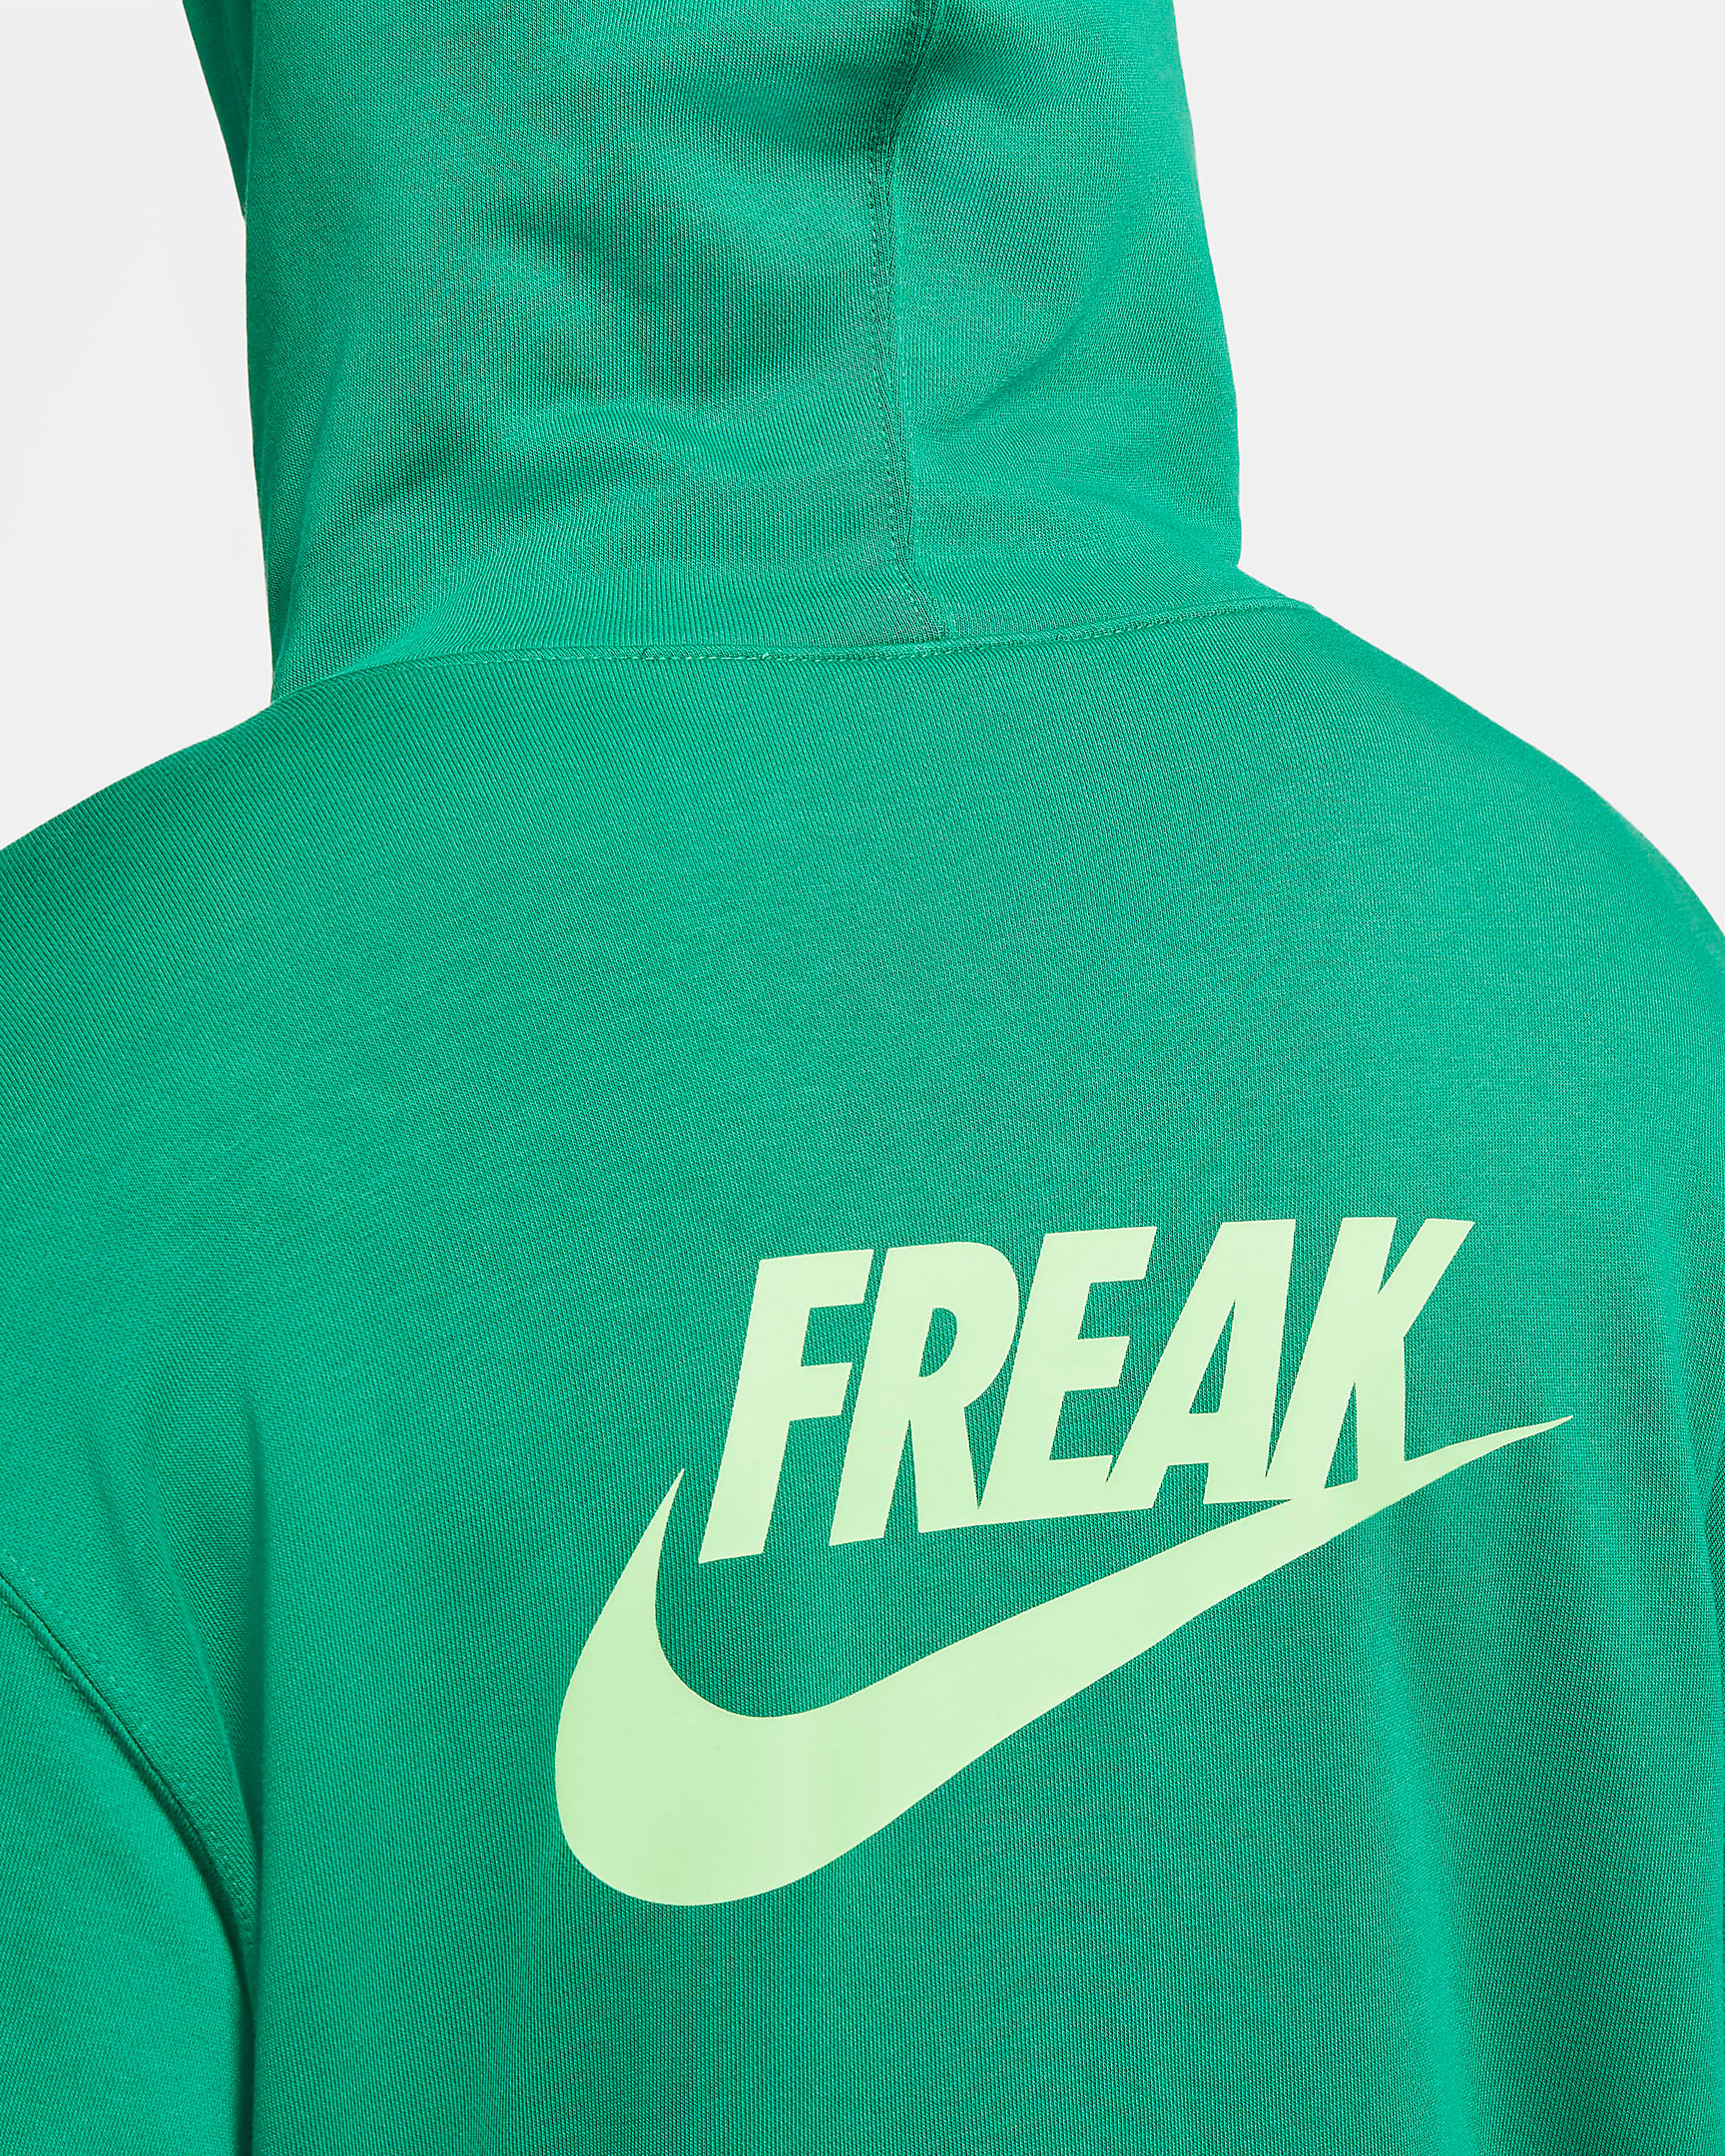 nike-zoom-freak-2-naija-green-hoodie-3